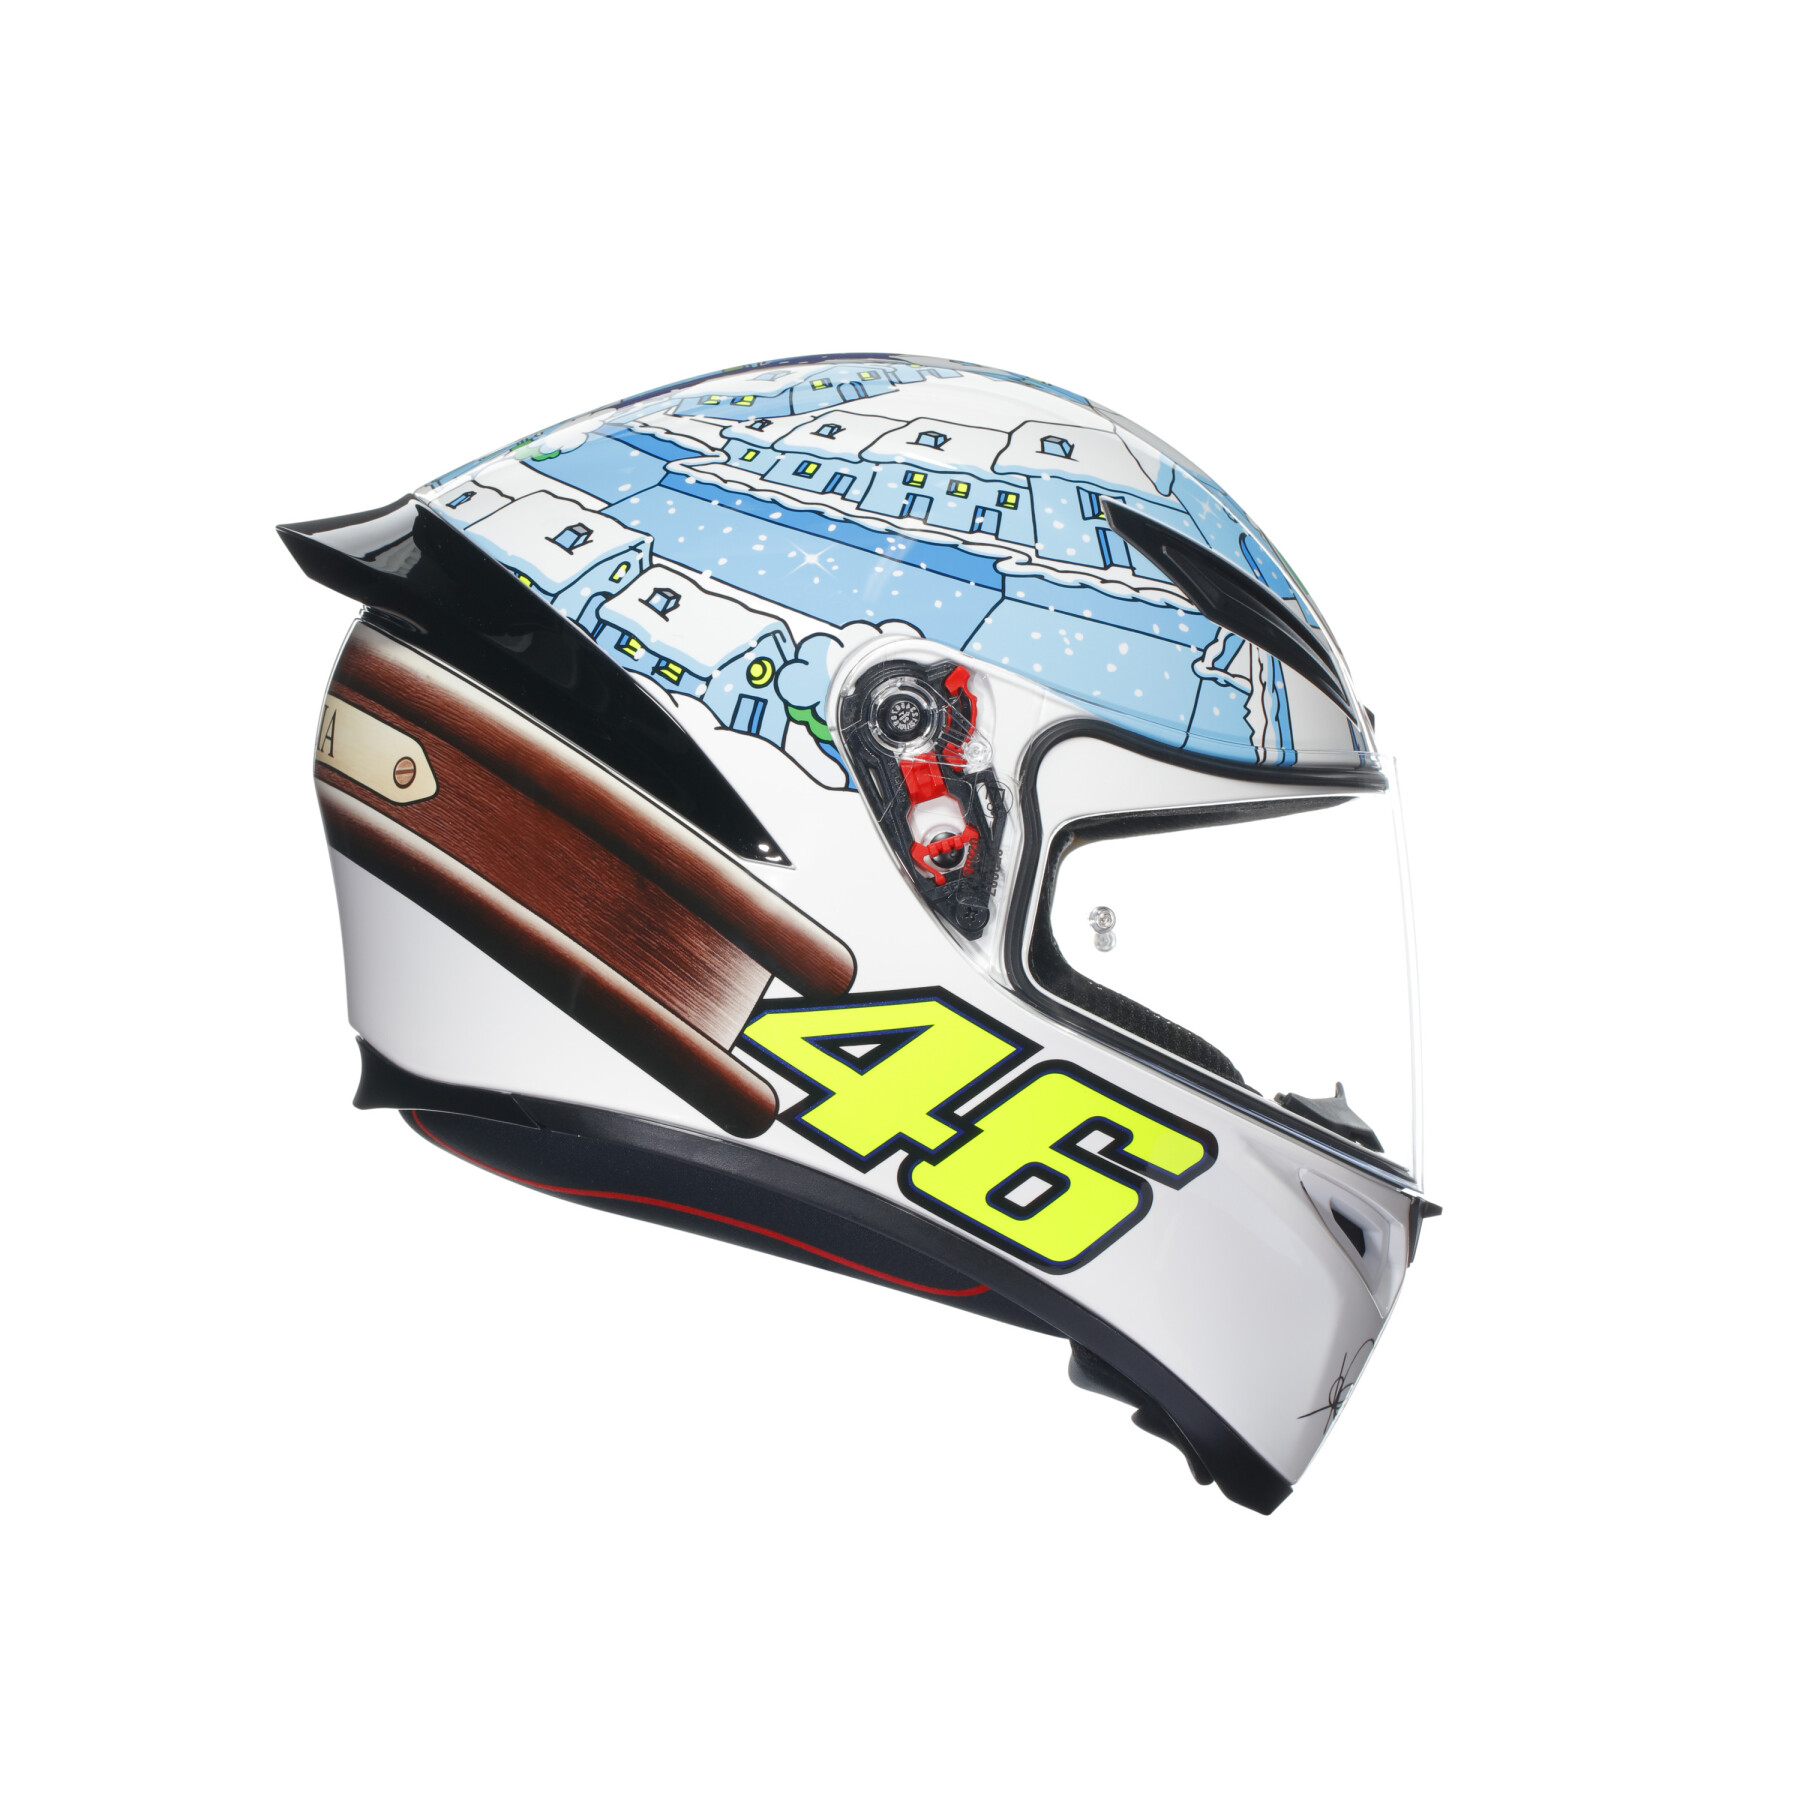 Full face motorcycle helmet AGV K1 S Rossi Winter Test 2017